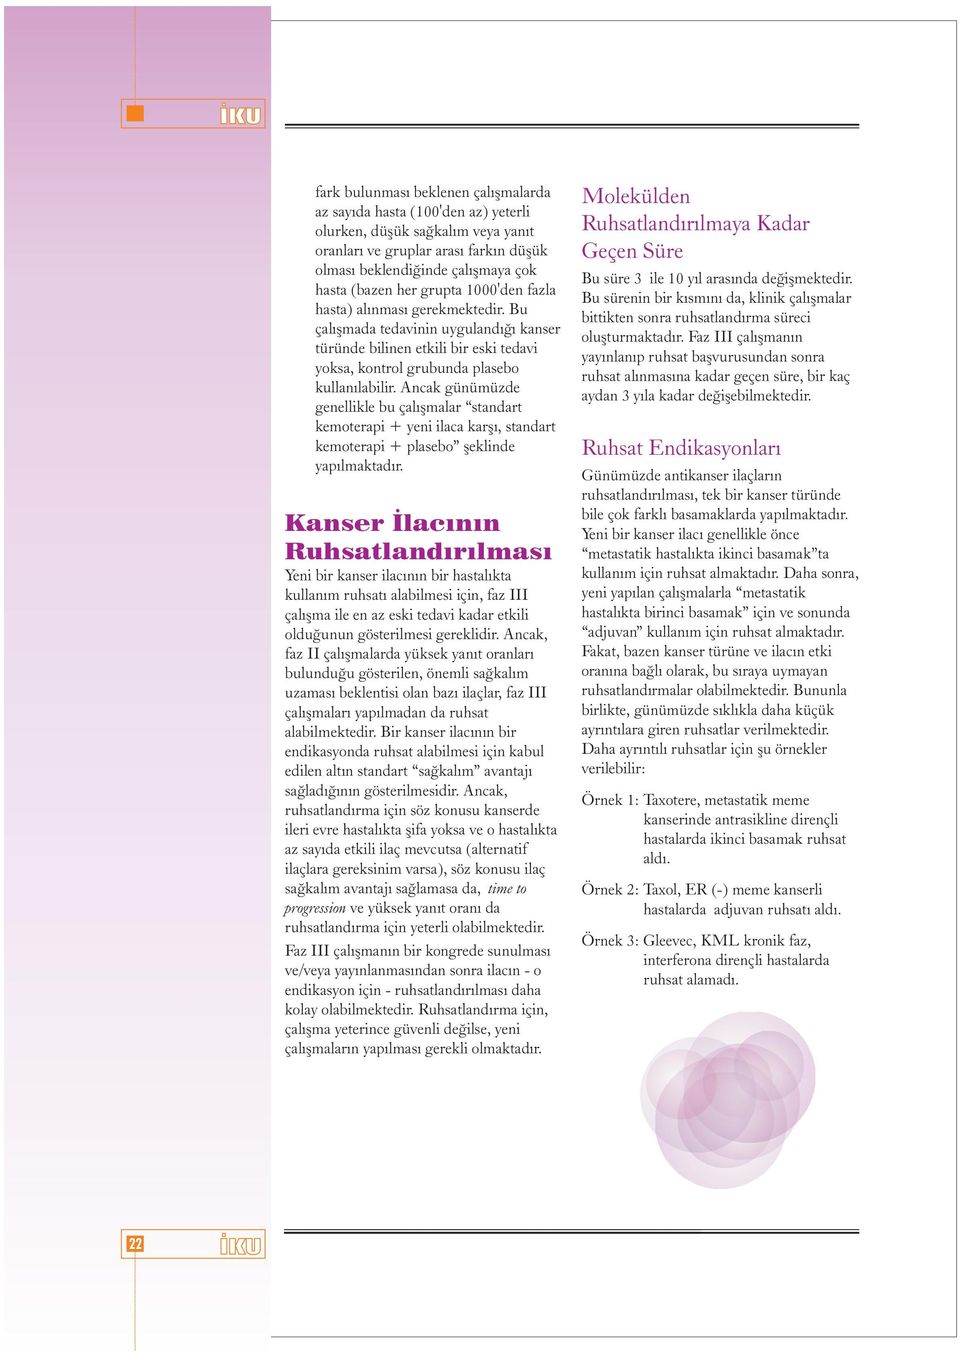 Ancak günümüzde genellikle bu çalýþmalar standart kemoterapi + yeni ilaca karþý, standart kemoterapi + plasebo þeklinde yapýlmaktadýr.